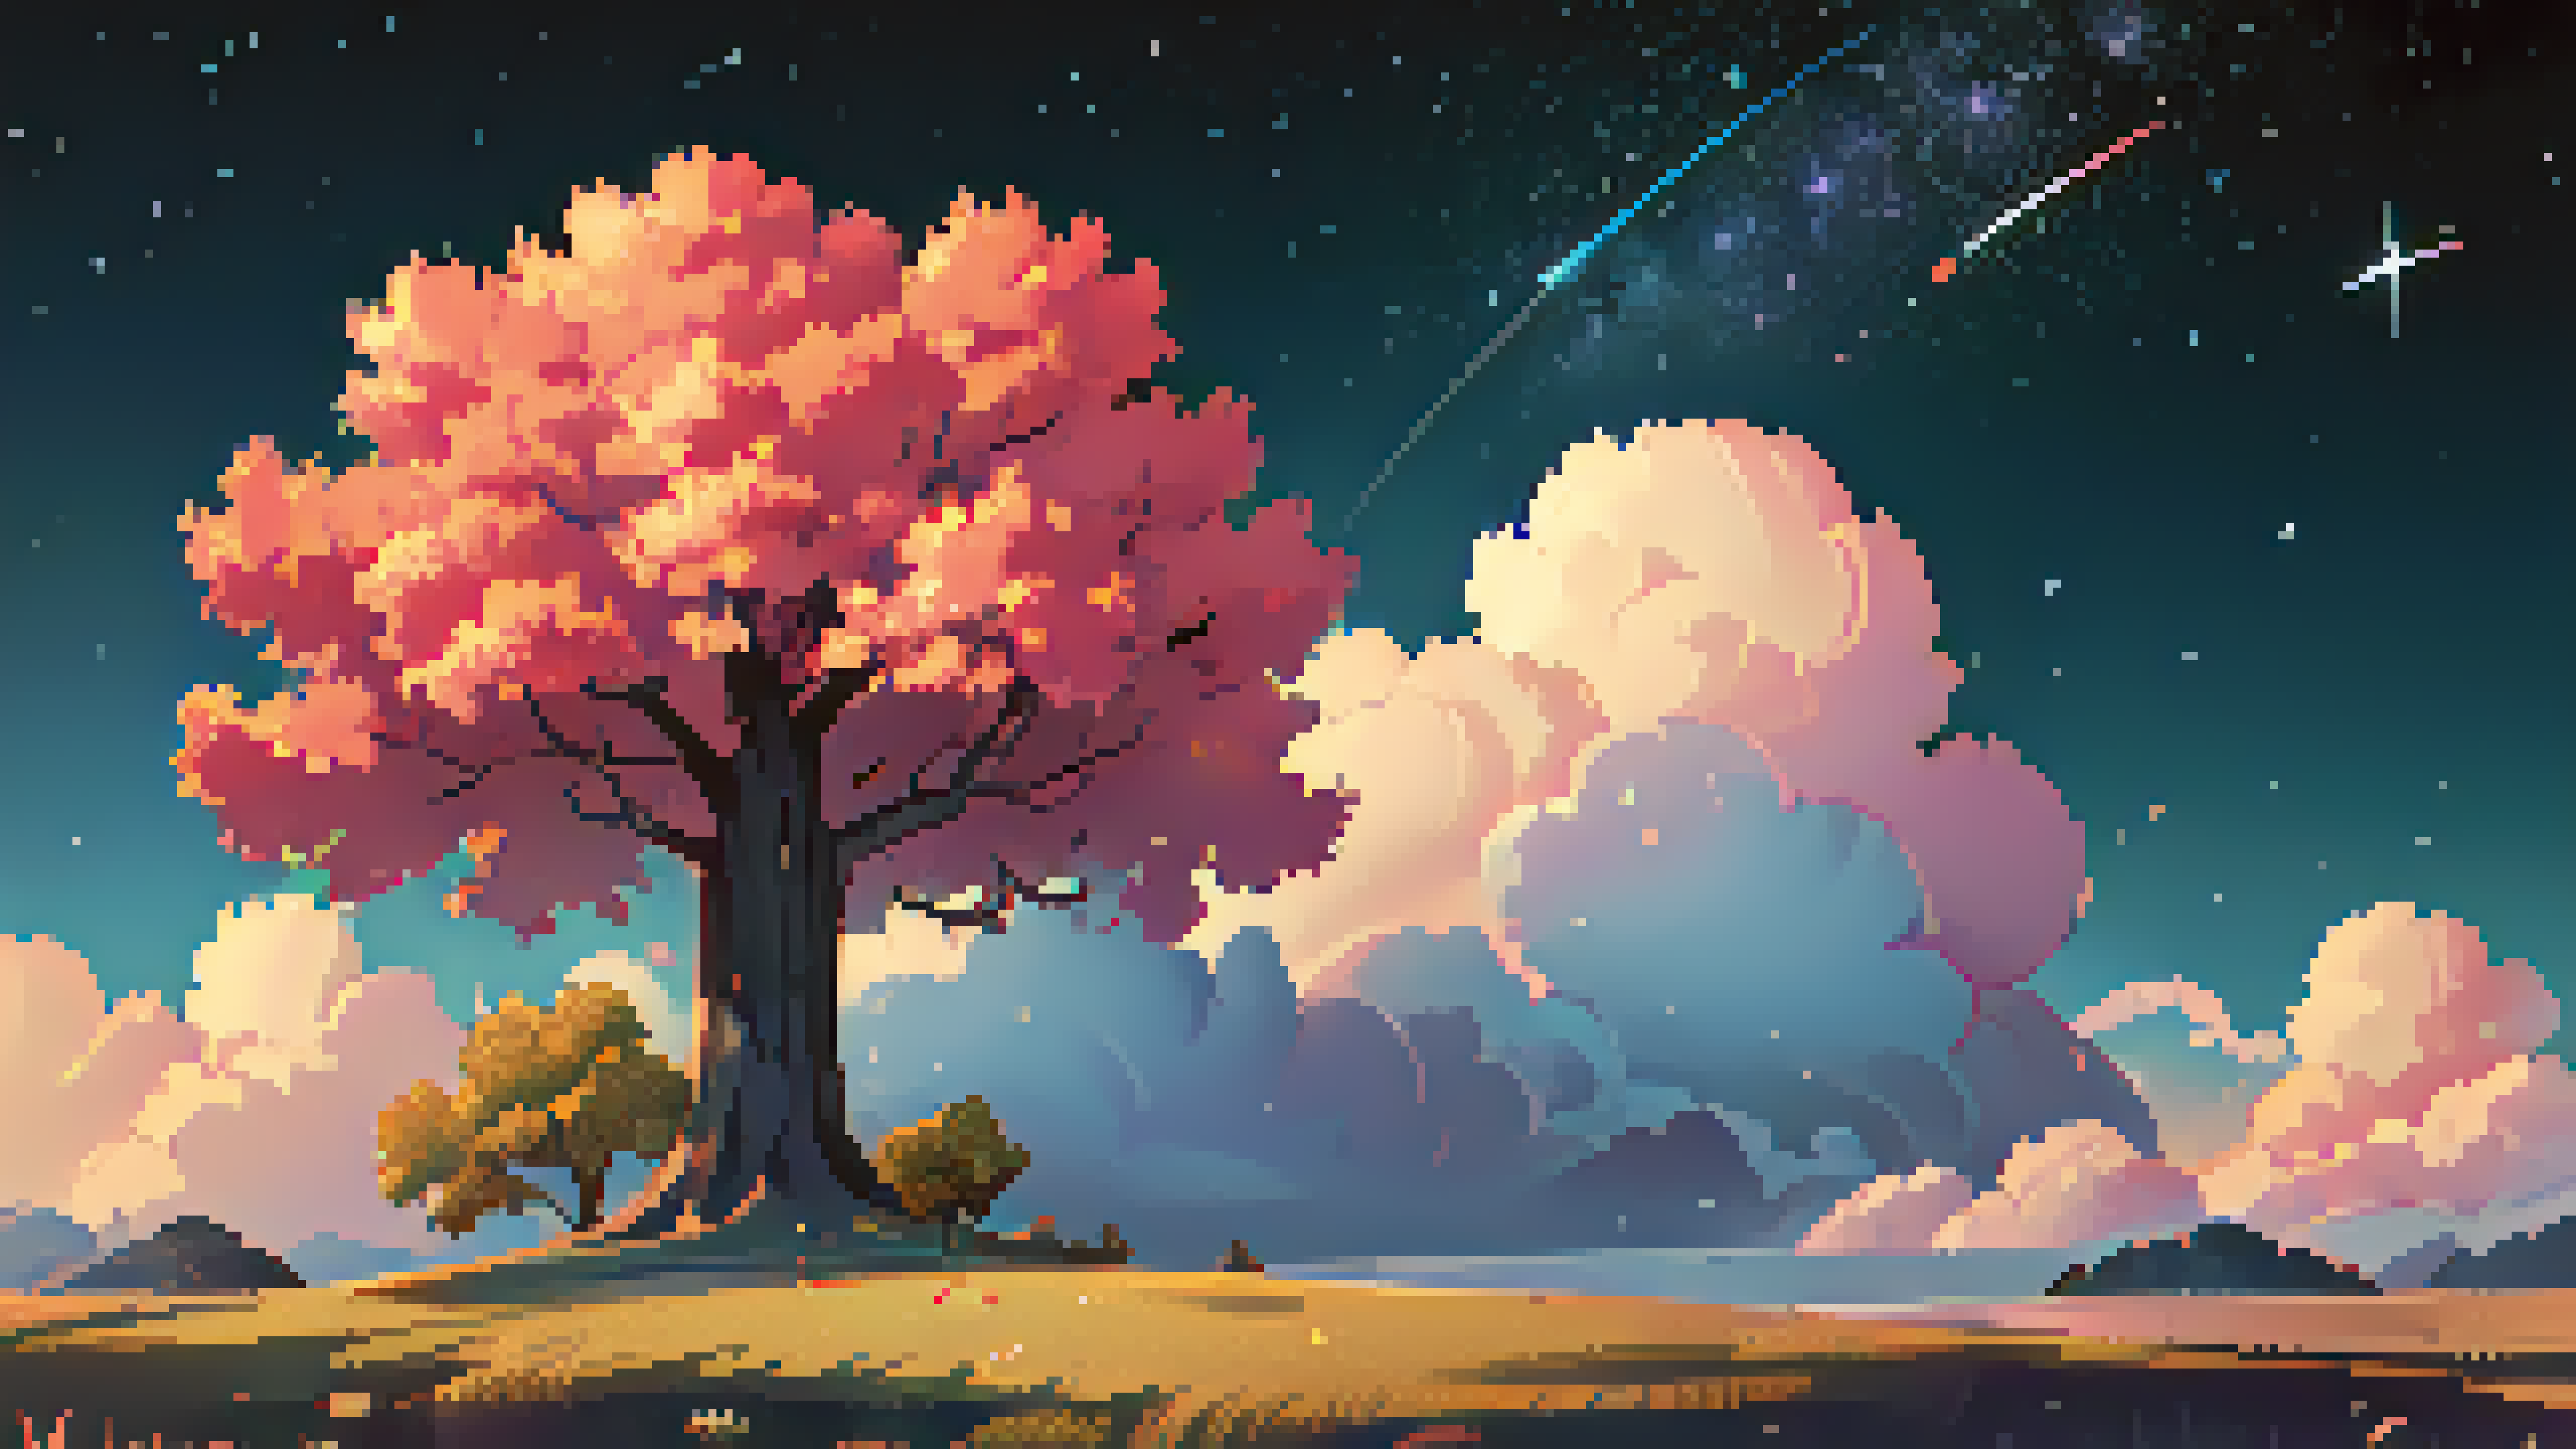 Digital Art Pixel Art Pixelated Pixels Trees Cherry Blossom Night Stars Clouds Shooting Stars Field 5120x2880